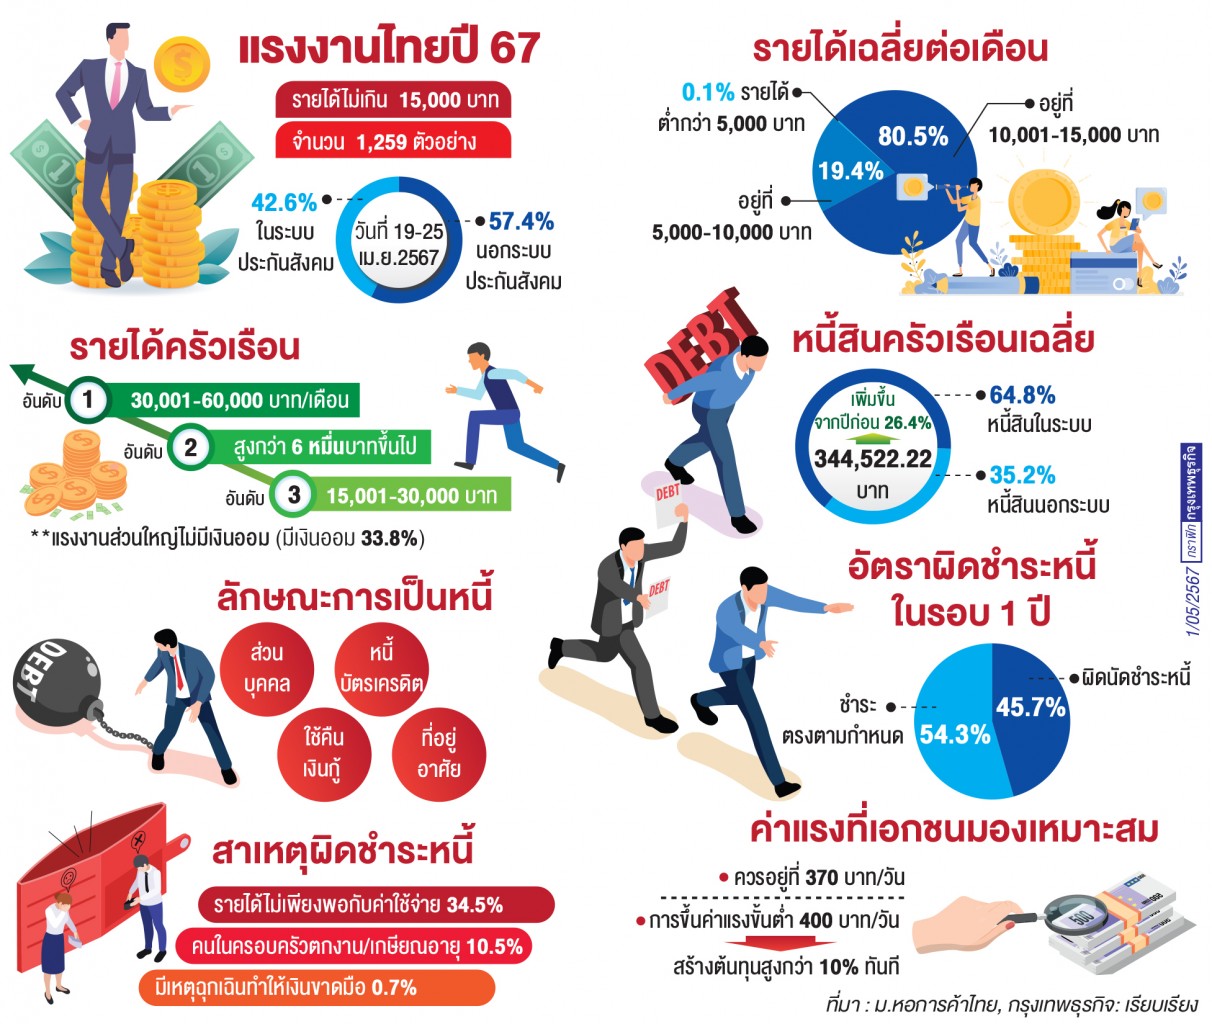 แรงงานไทยหนี้ท่วม ‘รายได้ไม่พอจ่าย’ ค่าครองชีพสูงกดดัน ‘คุณภาพชีวิต’